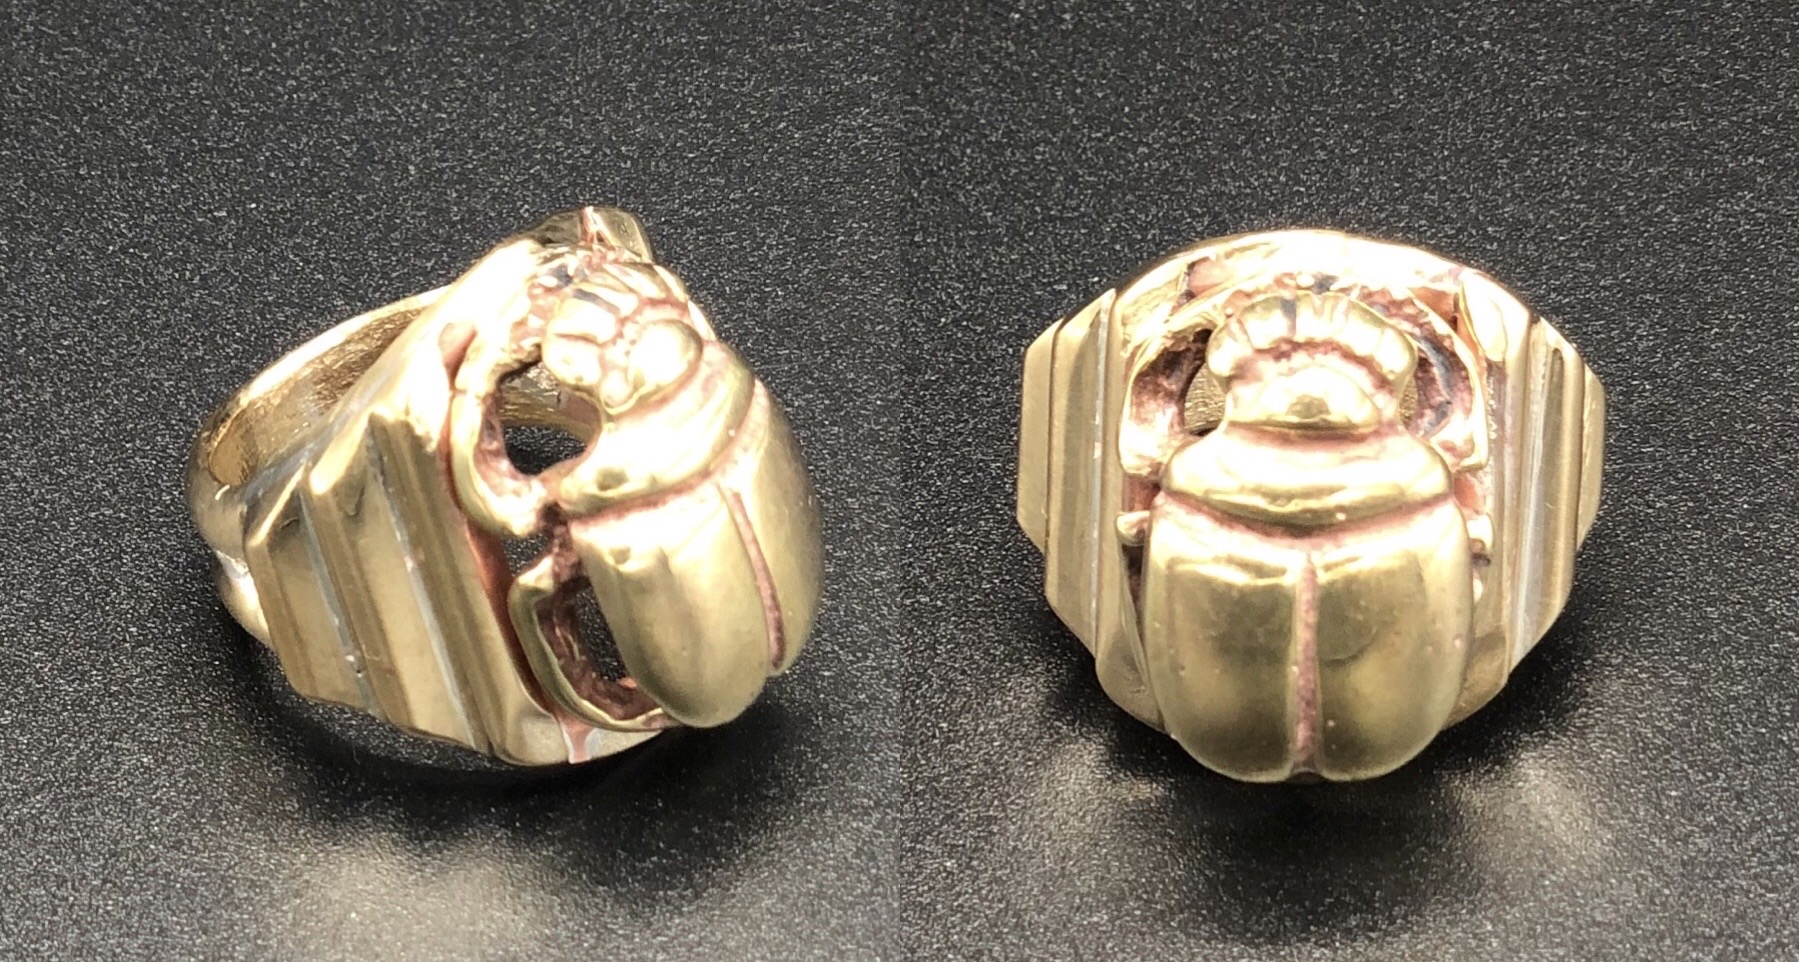 Brass Scarab Ring